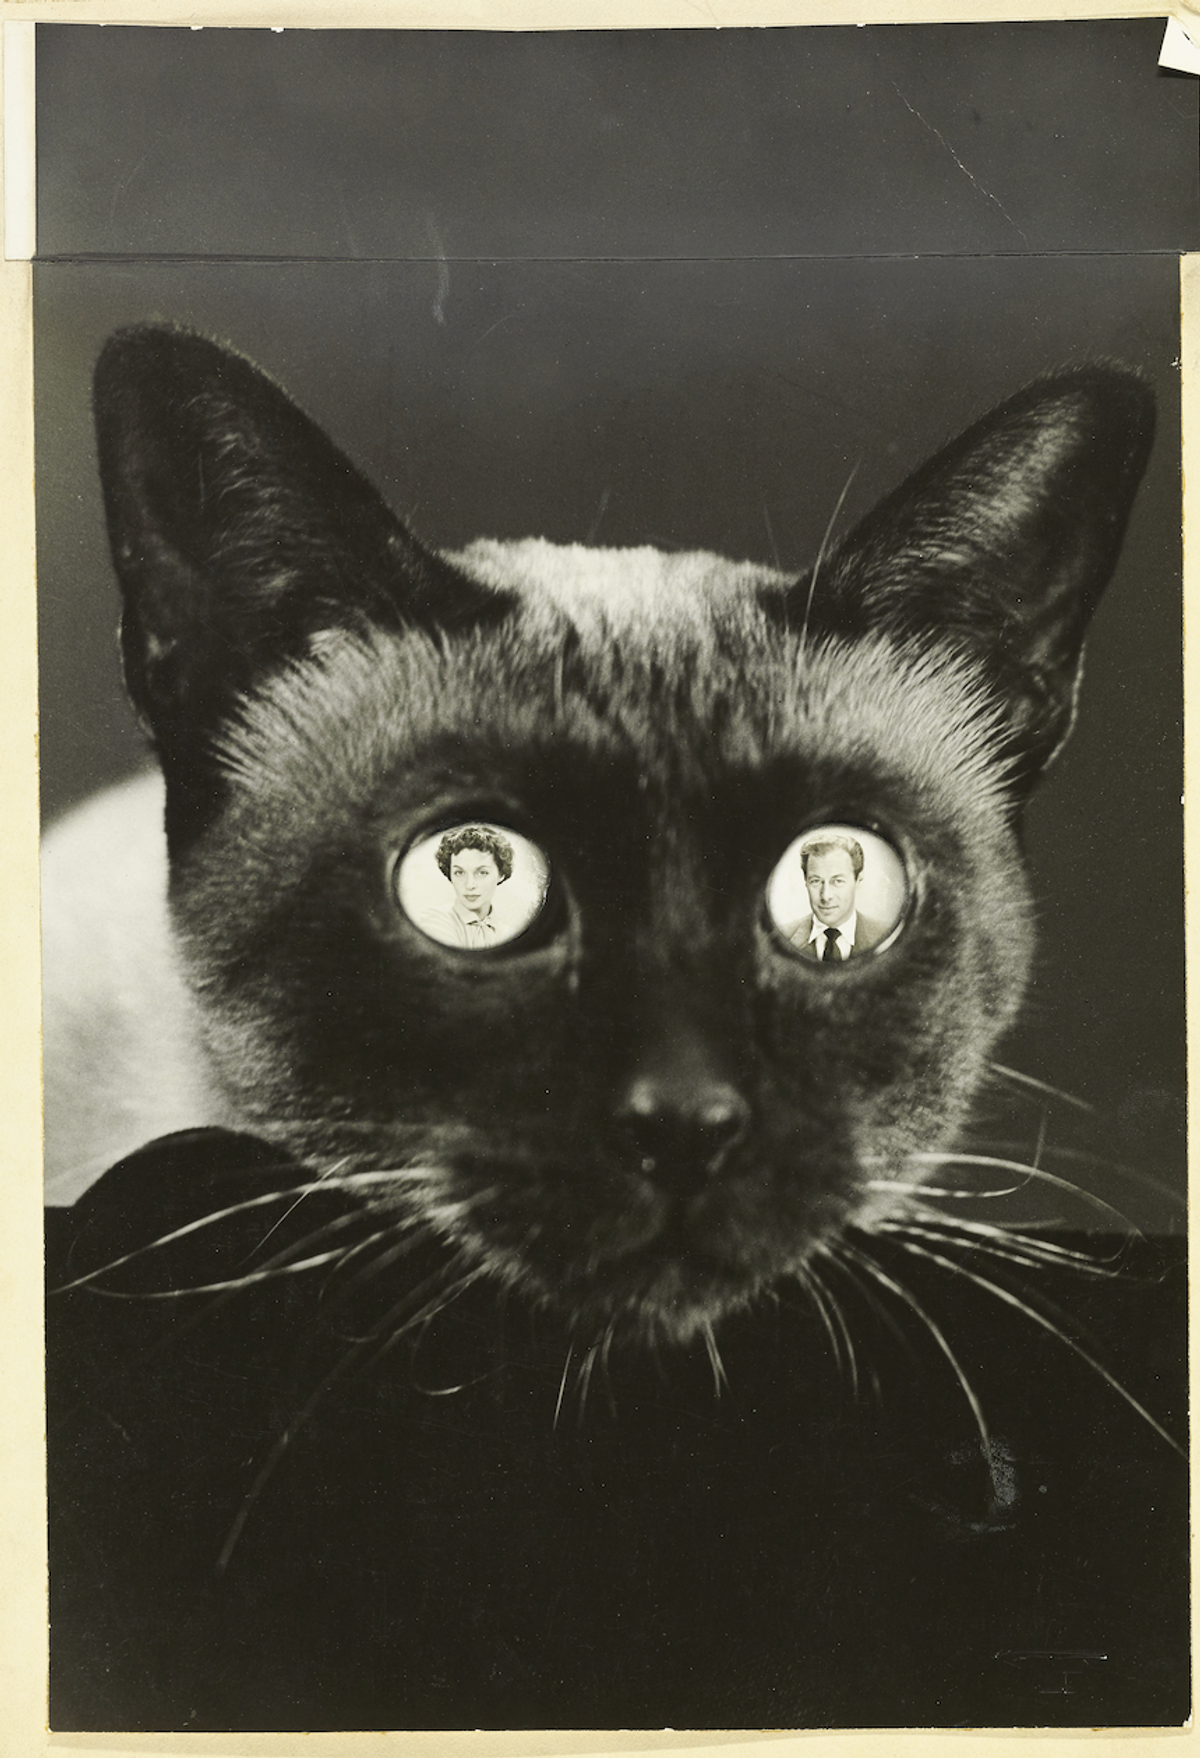 Erwin Blumenfeld, Le Couple d’acteurs Rex Harrison et Lilli Palmer en surimpression dans les yeux d’un chat siamois, 1950, photographie publiée dans Vogue. © Condé Nast